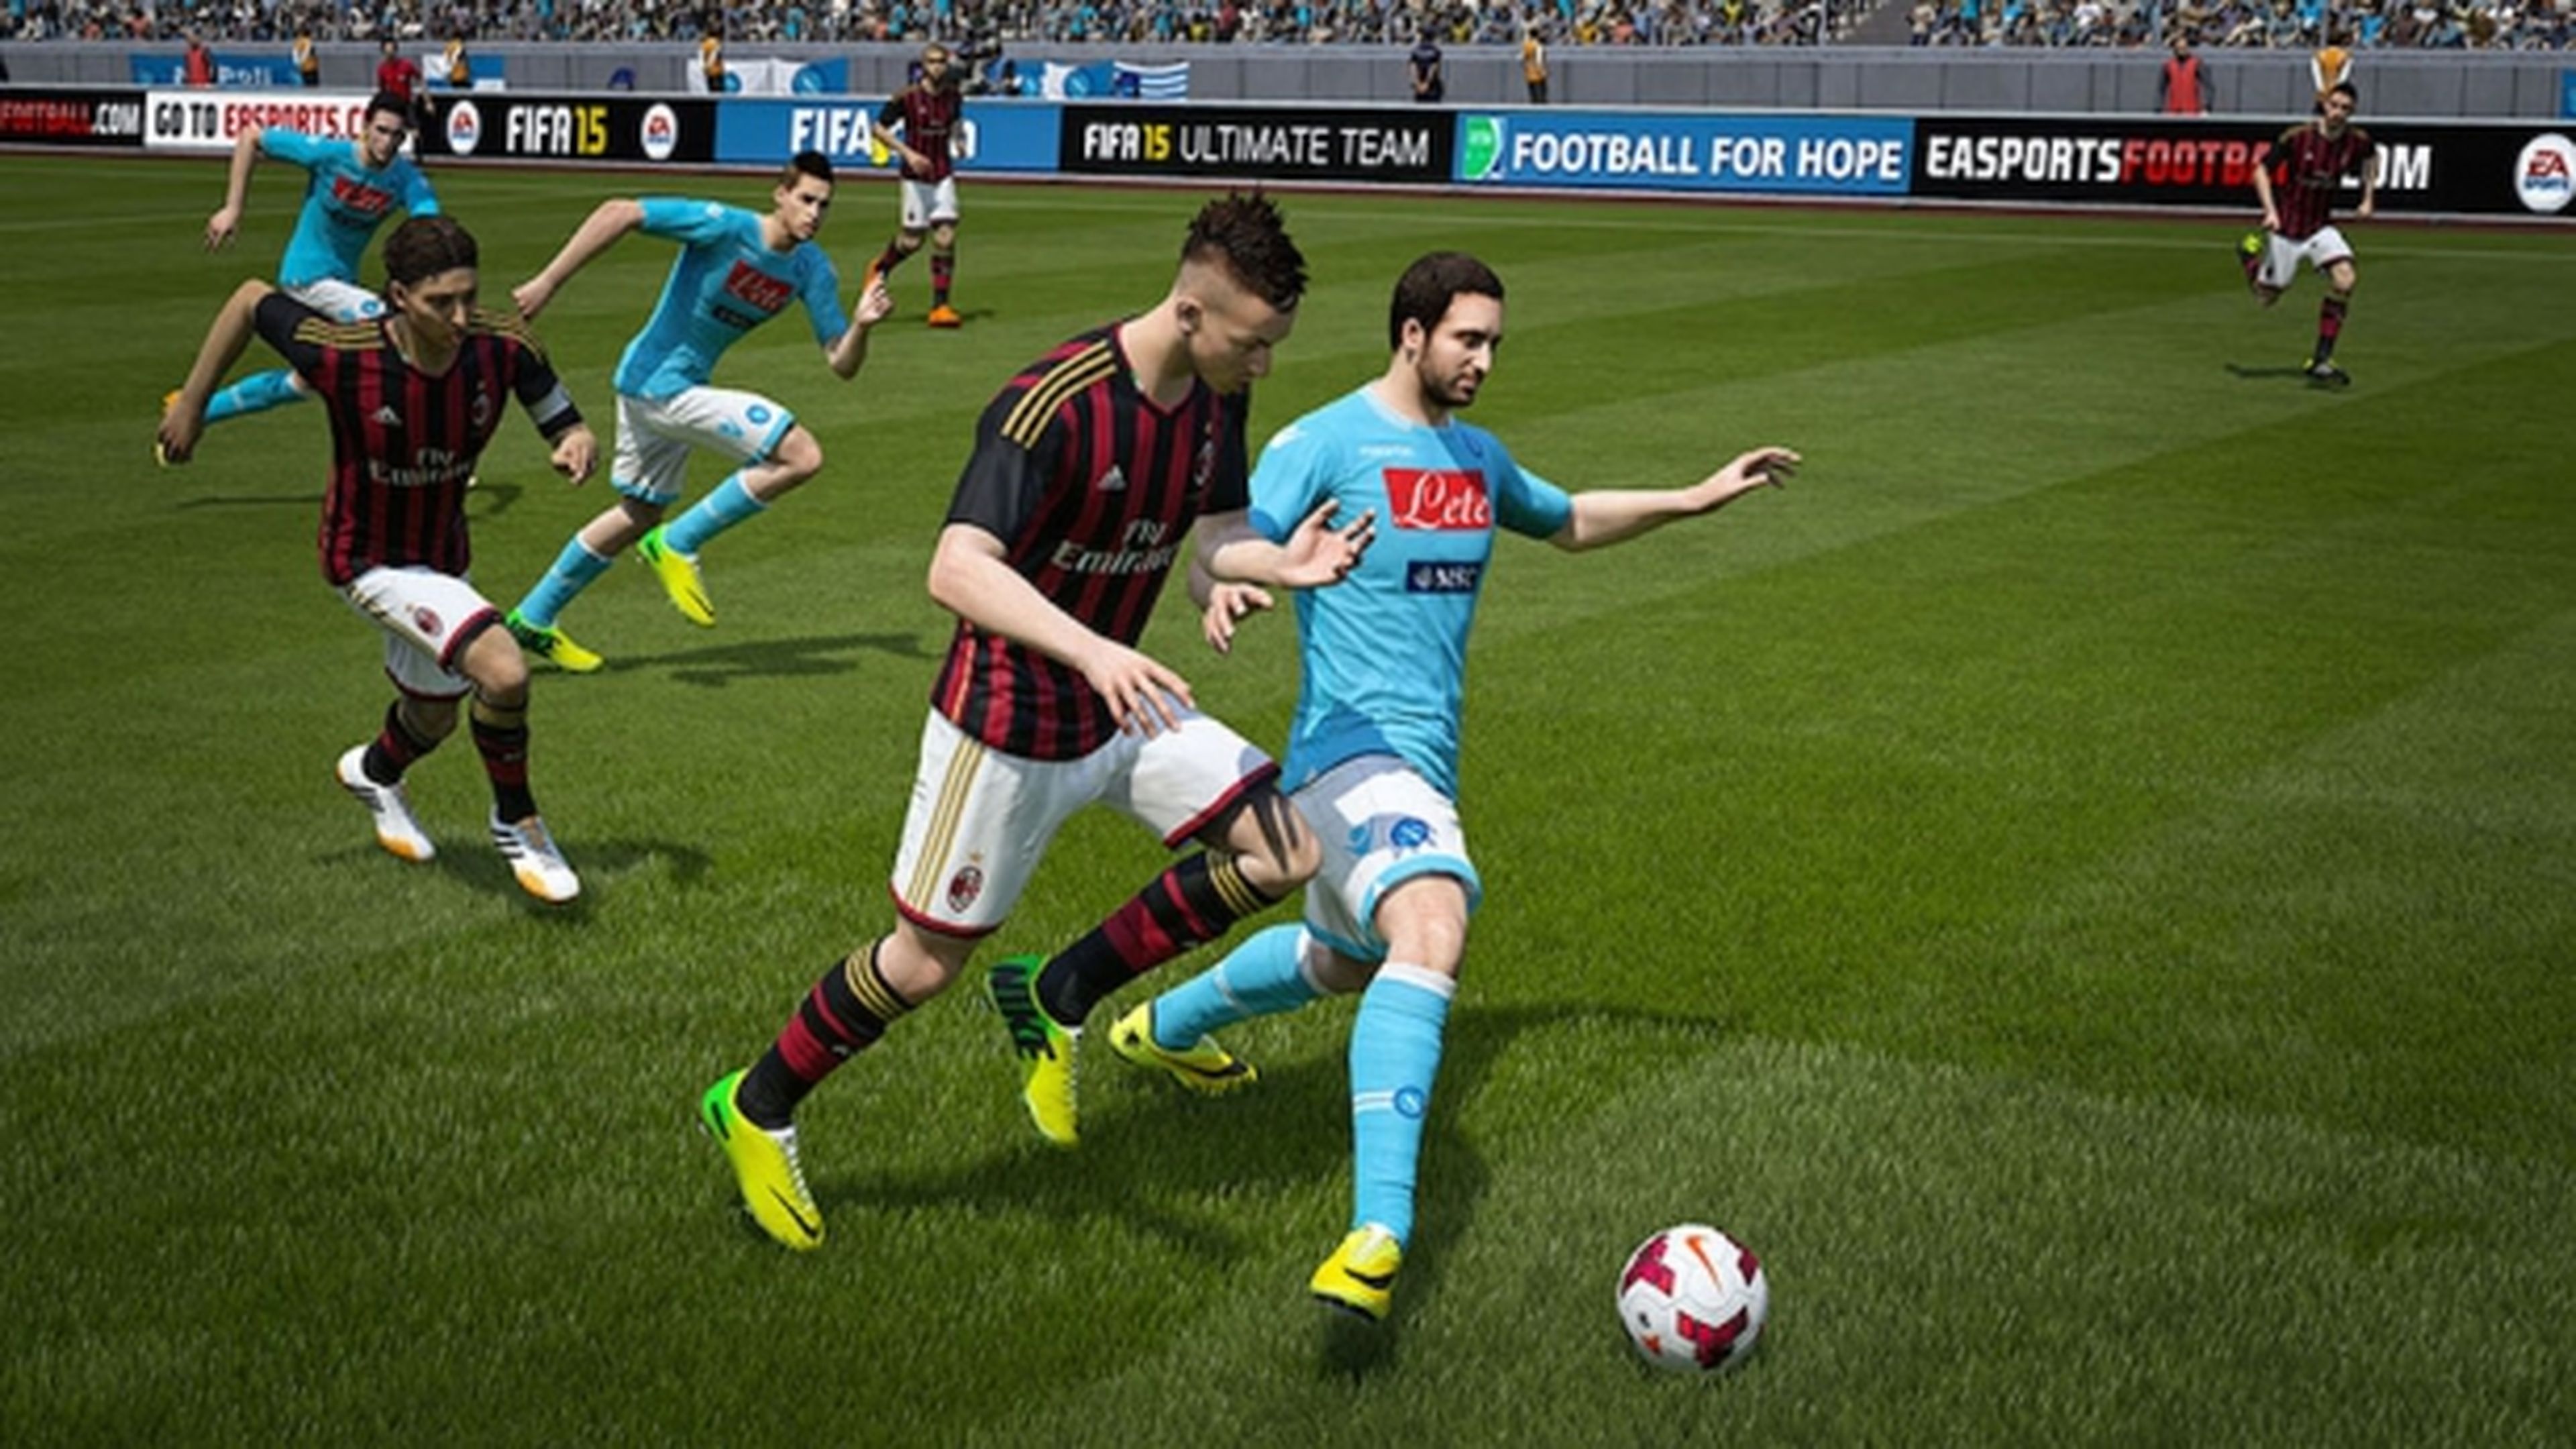 FIFA 16, requisitos mínimos y recomendados de la versión de PC